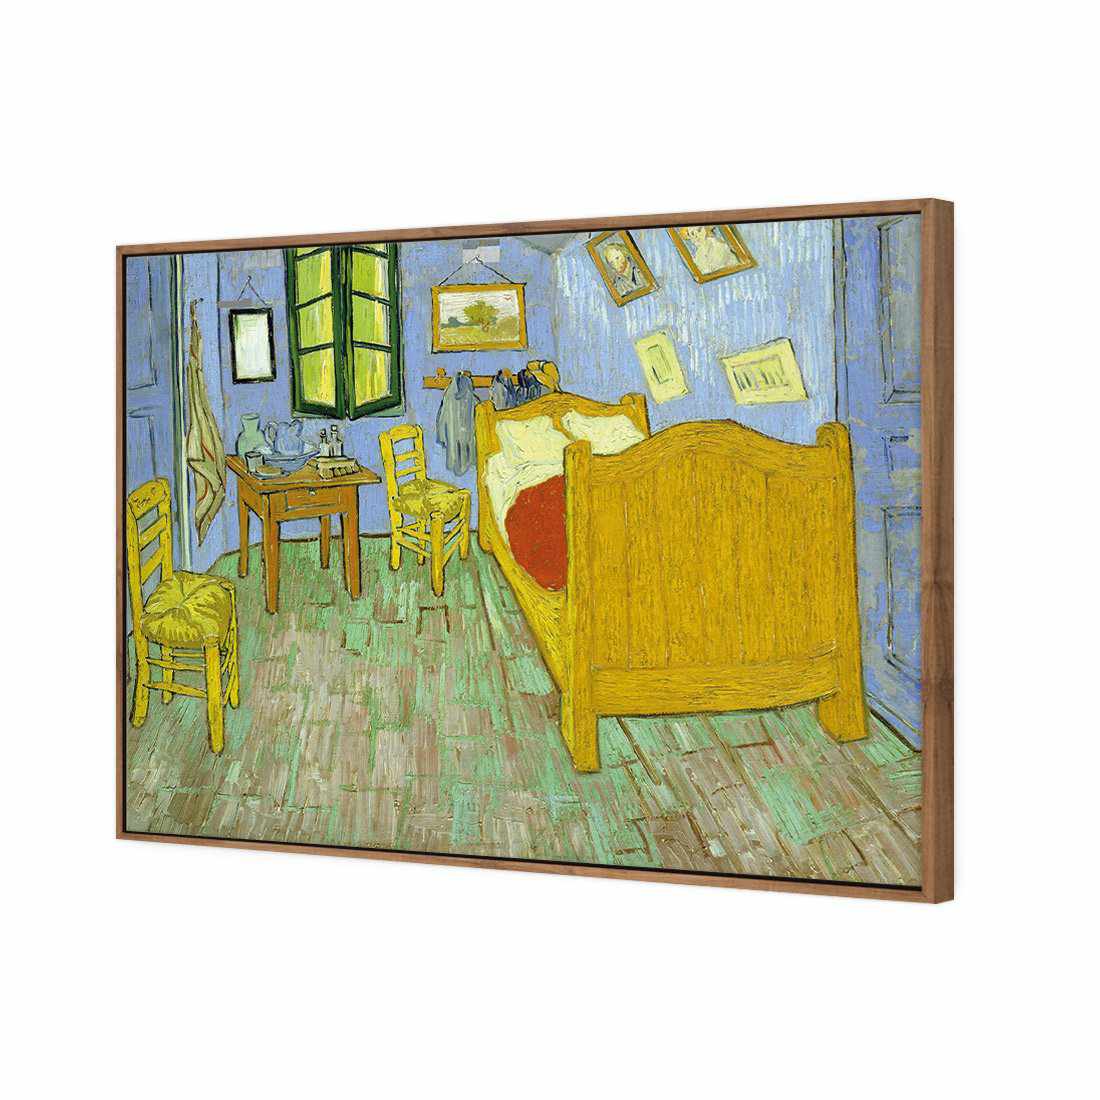 Vincent's Bedroom - Van Gogh Canvas Art-Canvas-Wall Art Designs-45x30cm-Canvas - Natural Frame-Wall Art Designs